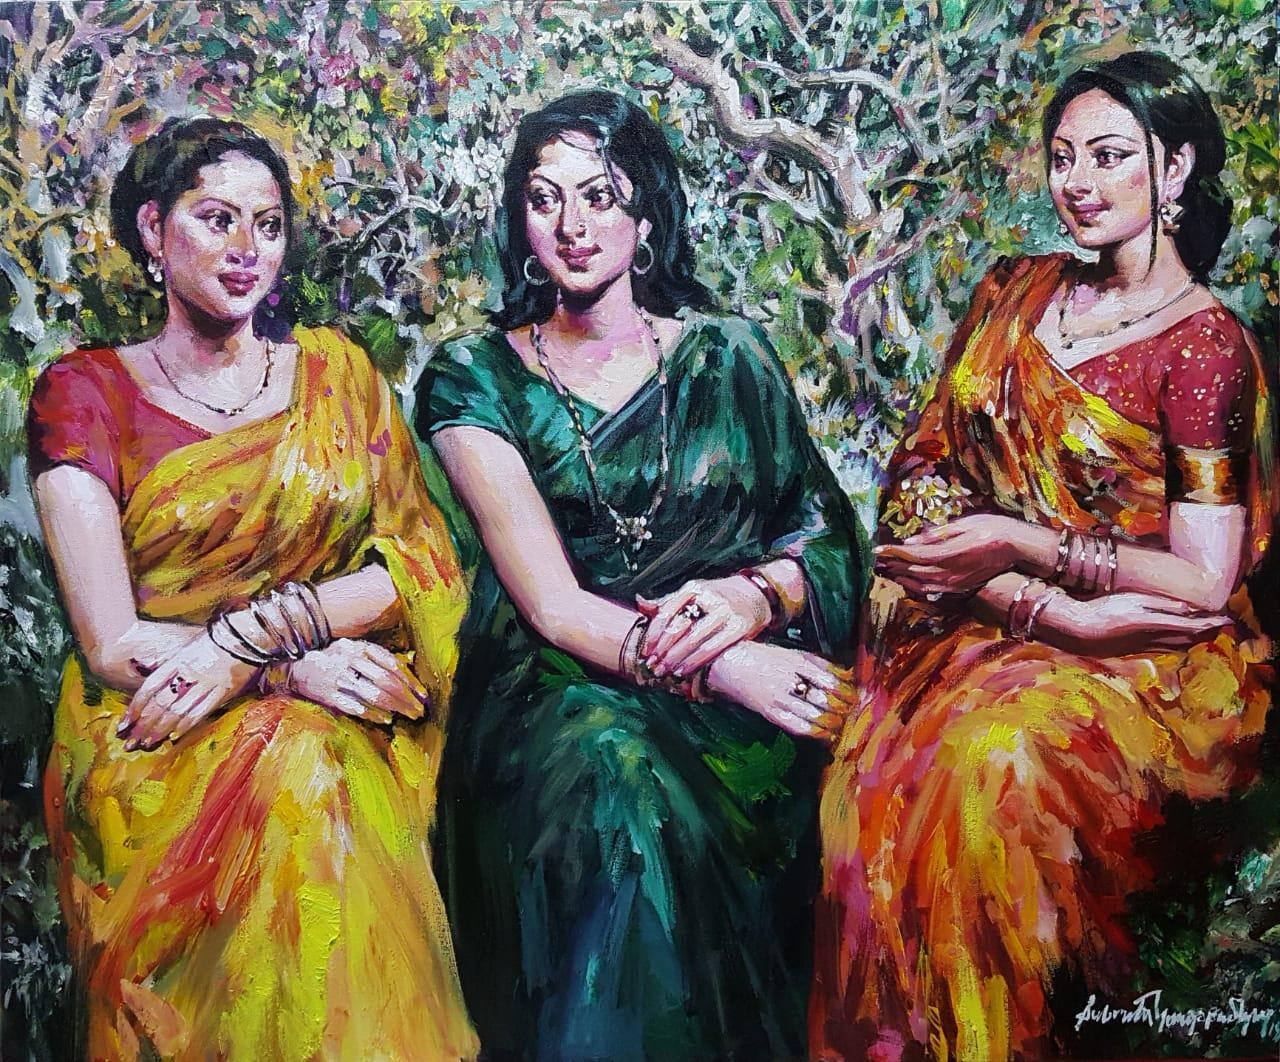 Subrata Gangopadhayay Figurative Painting – Gossip von drei Frauen im Garten, Acryl auf Leinwand, Grün, Rot, Gelb", auf Lager""